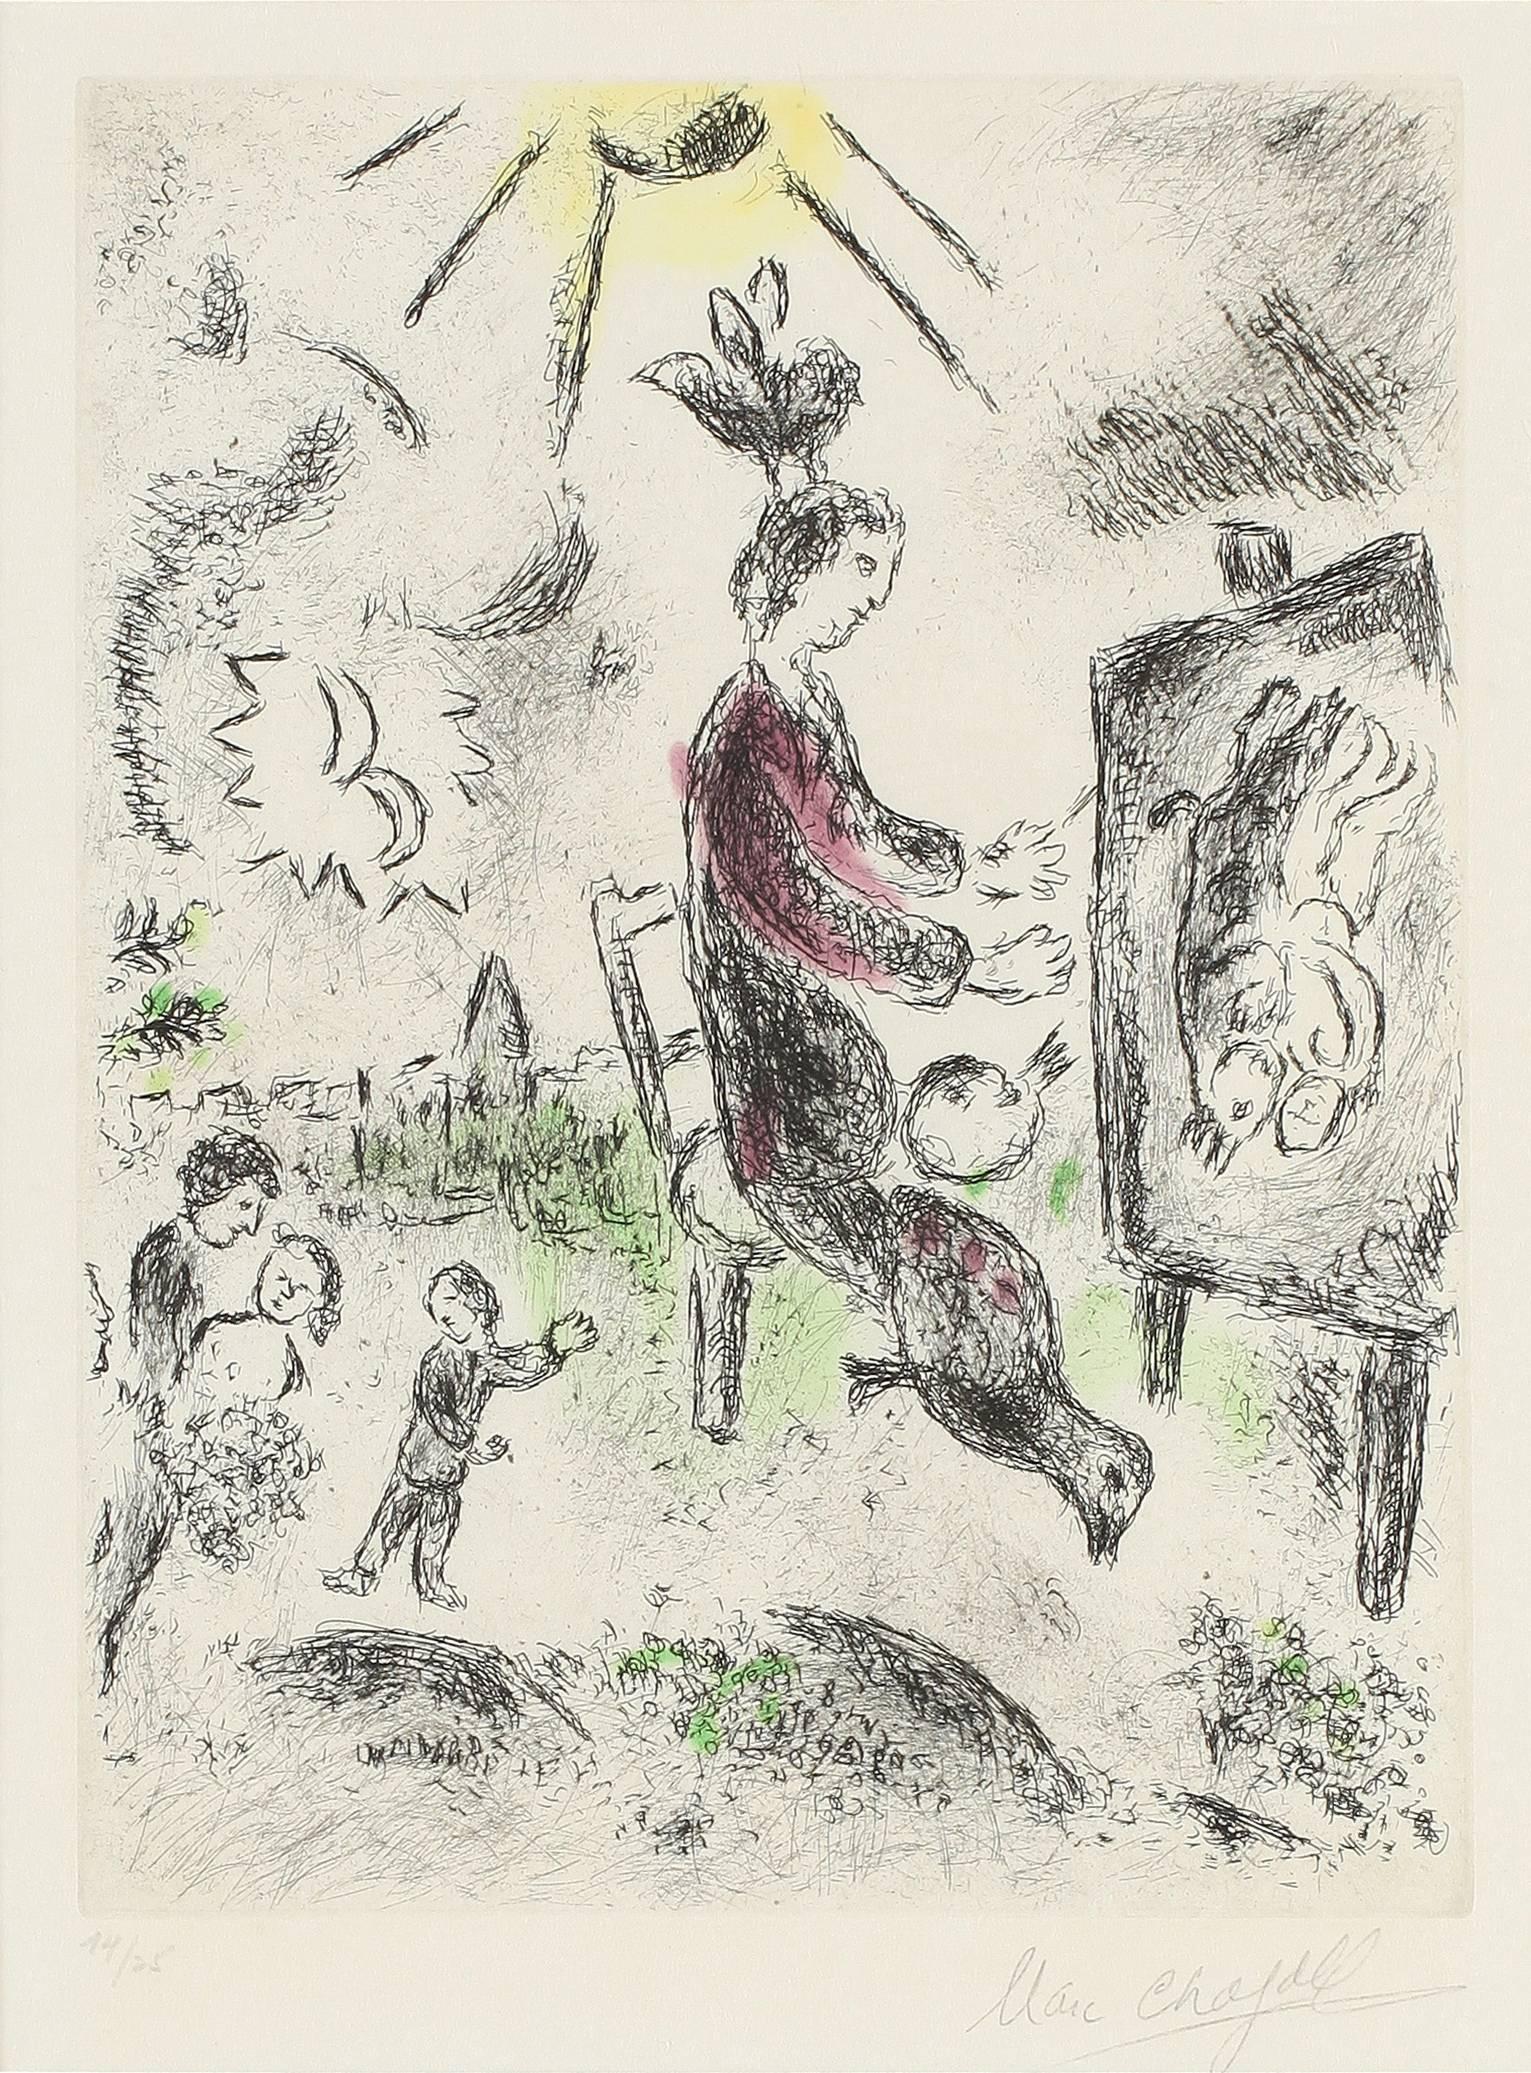 Celui qui dit les choses sans rien dire - Print by Marc Chagall